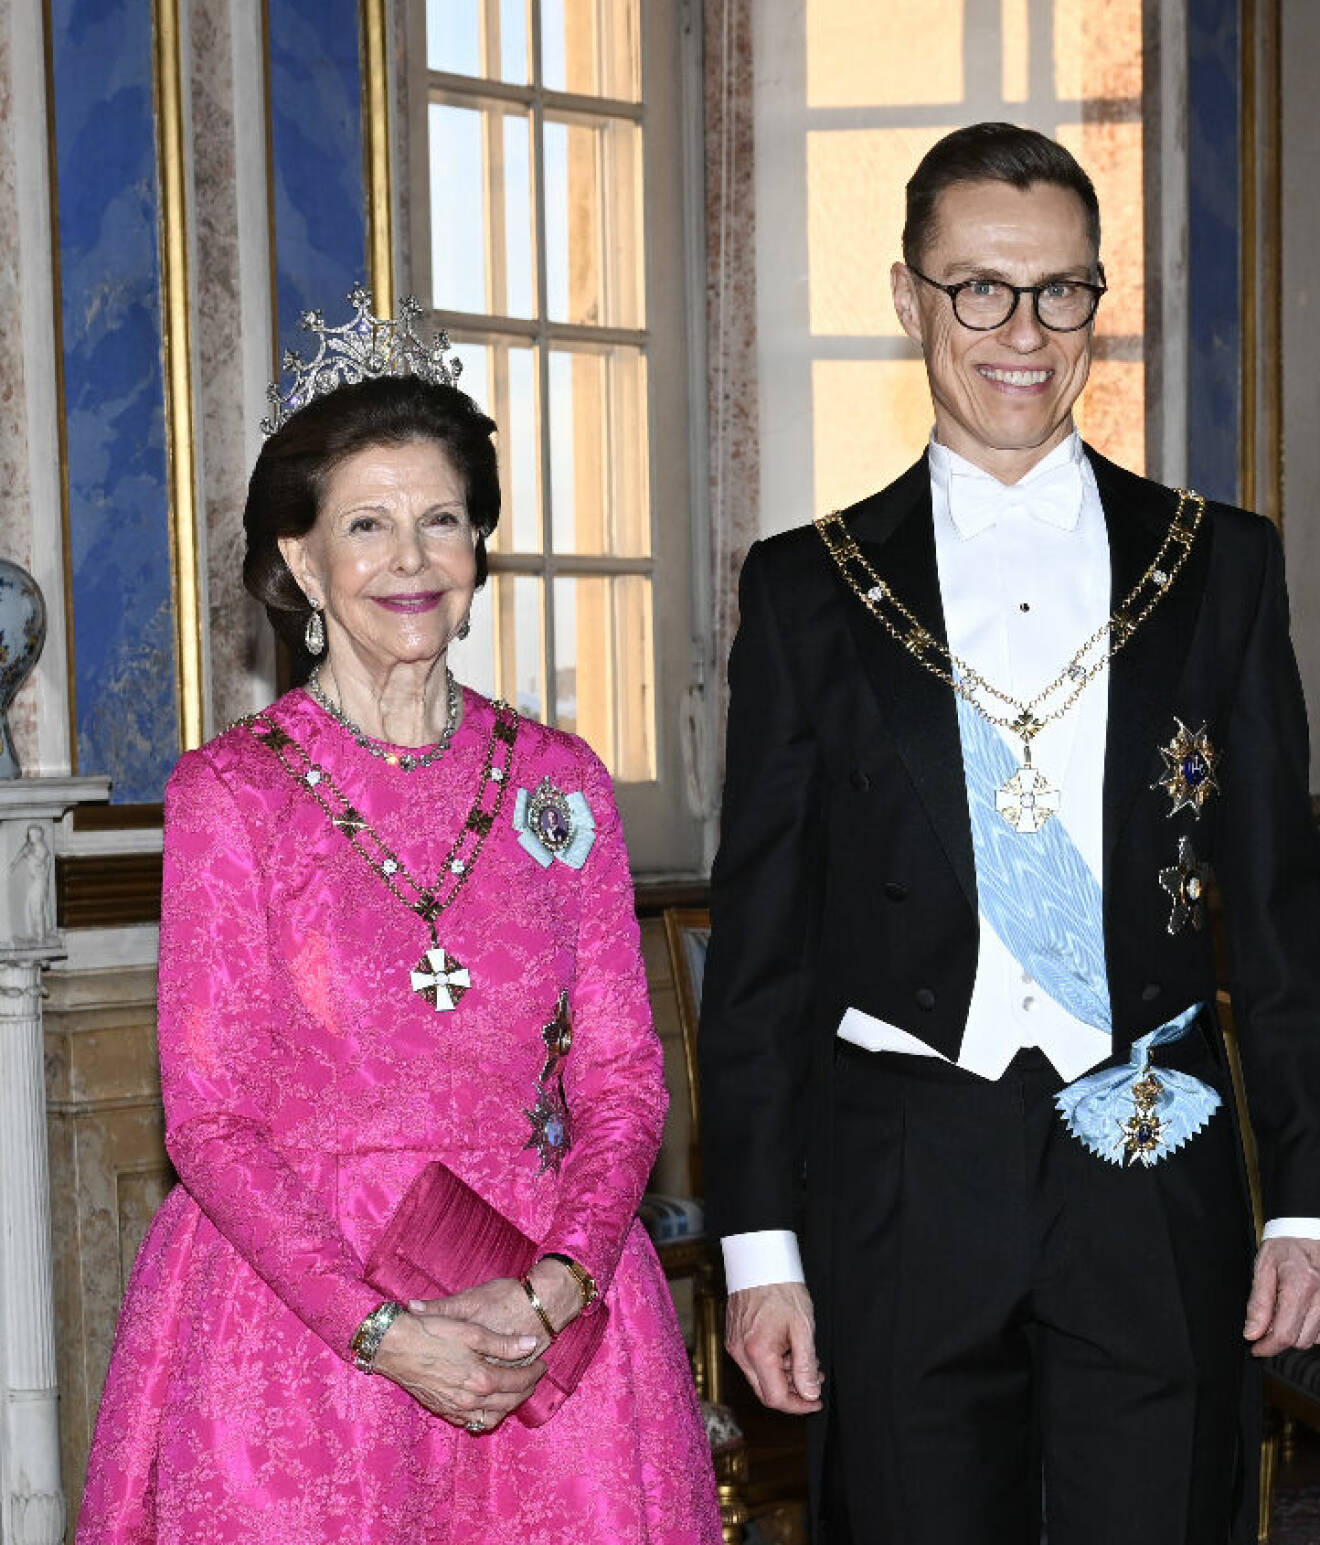 Drottning Silvia med Finlands president Alexander Stubb vid galamiddagen på slottet